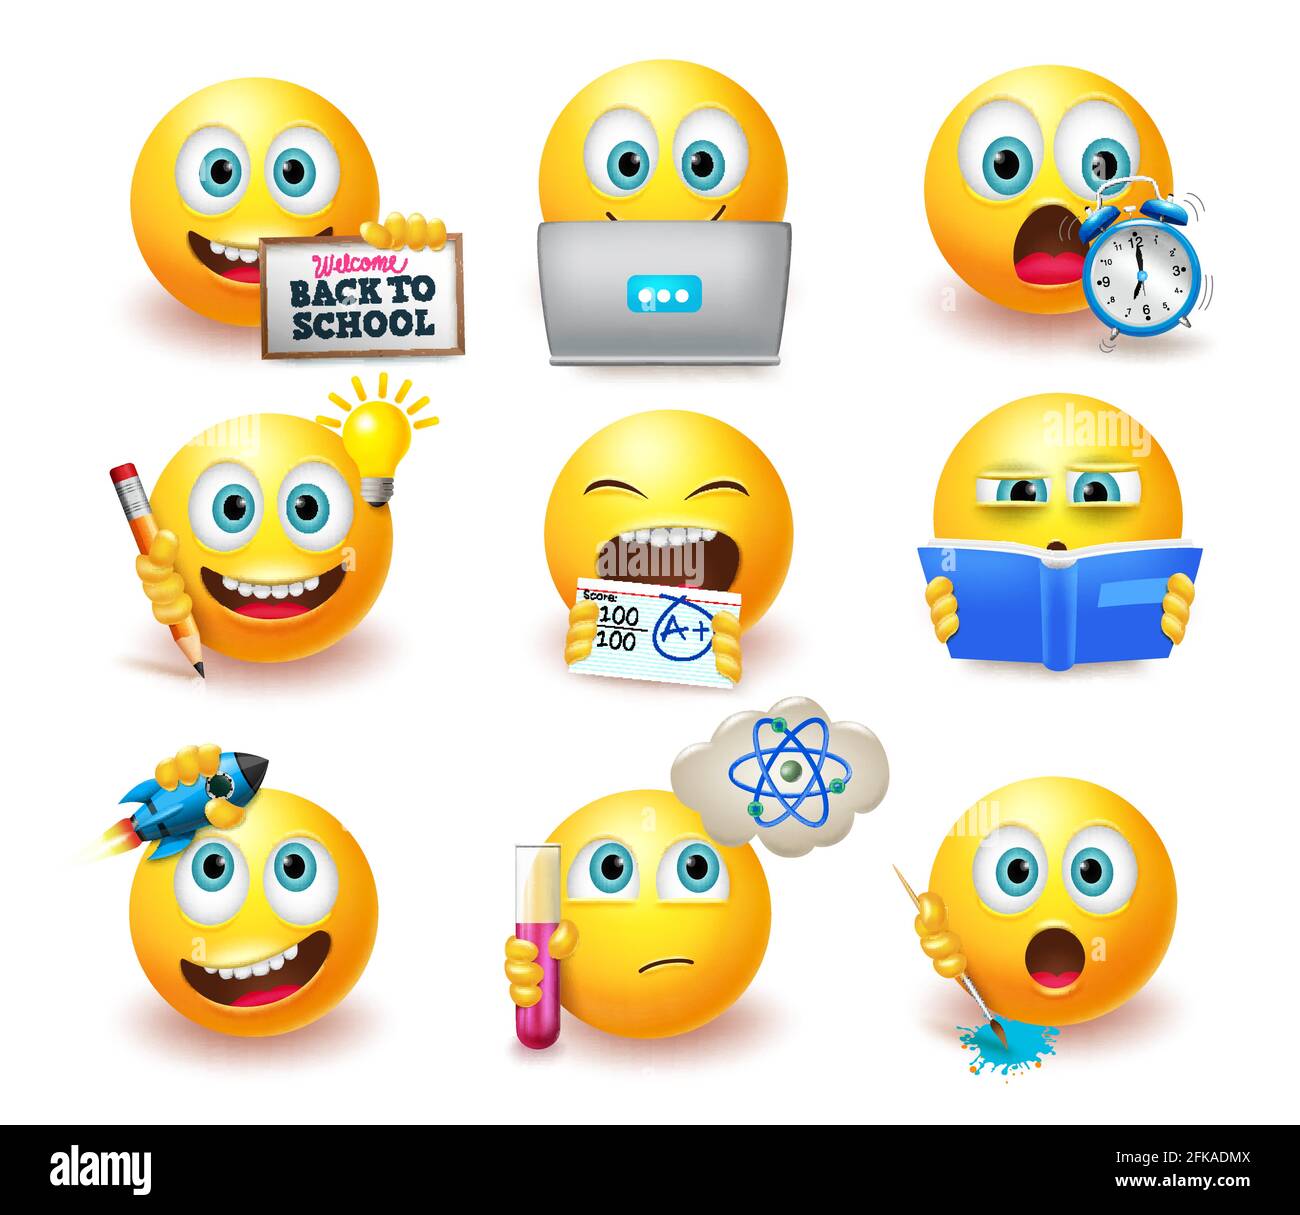 Smileys torna a scuola emoticon insieme vettoriale. Emoji smiley con posa educativa ed espressioni come studiare e pensare per le emoji studentesche. Illustrazione Vettoriale